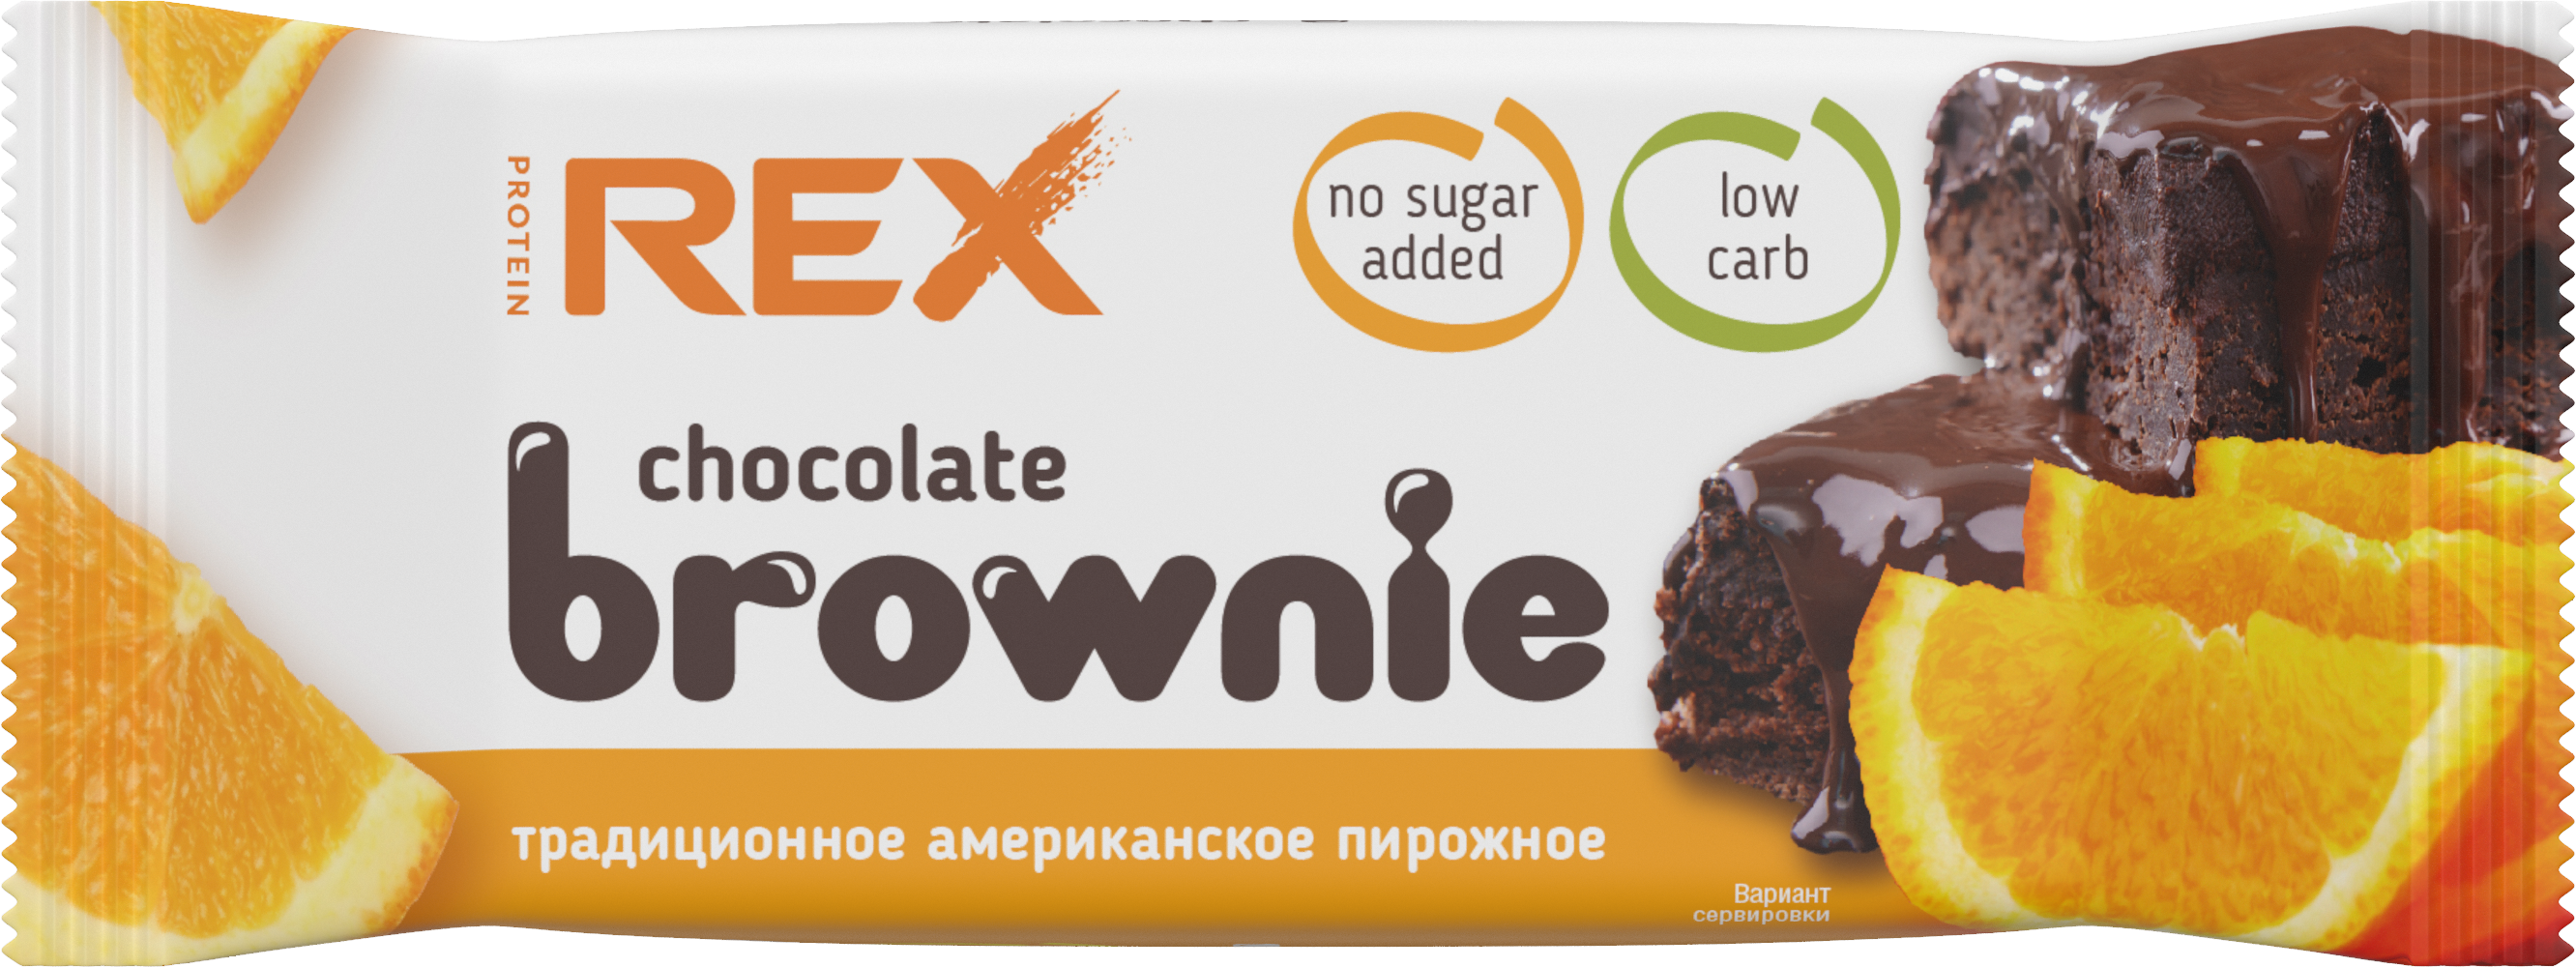 Пирожное ProteinRex Chocolate brownie протеиновое, апельсиновое, 50 г